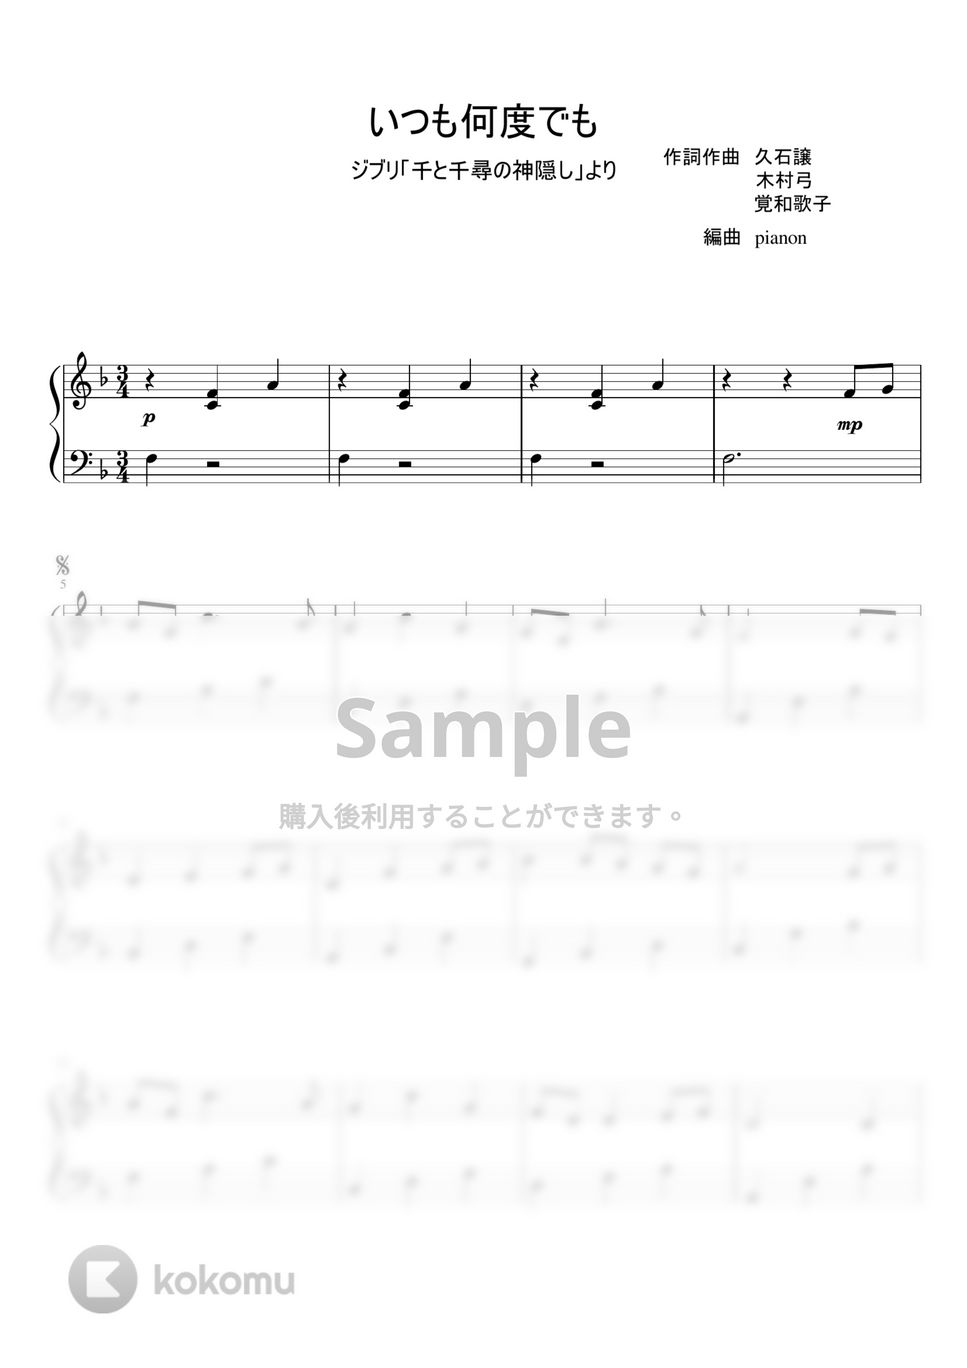 久石譲 - いつも何度でも (ピアノ初級 / ソロ) by pianon